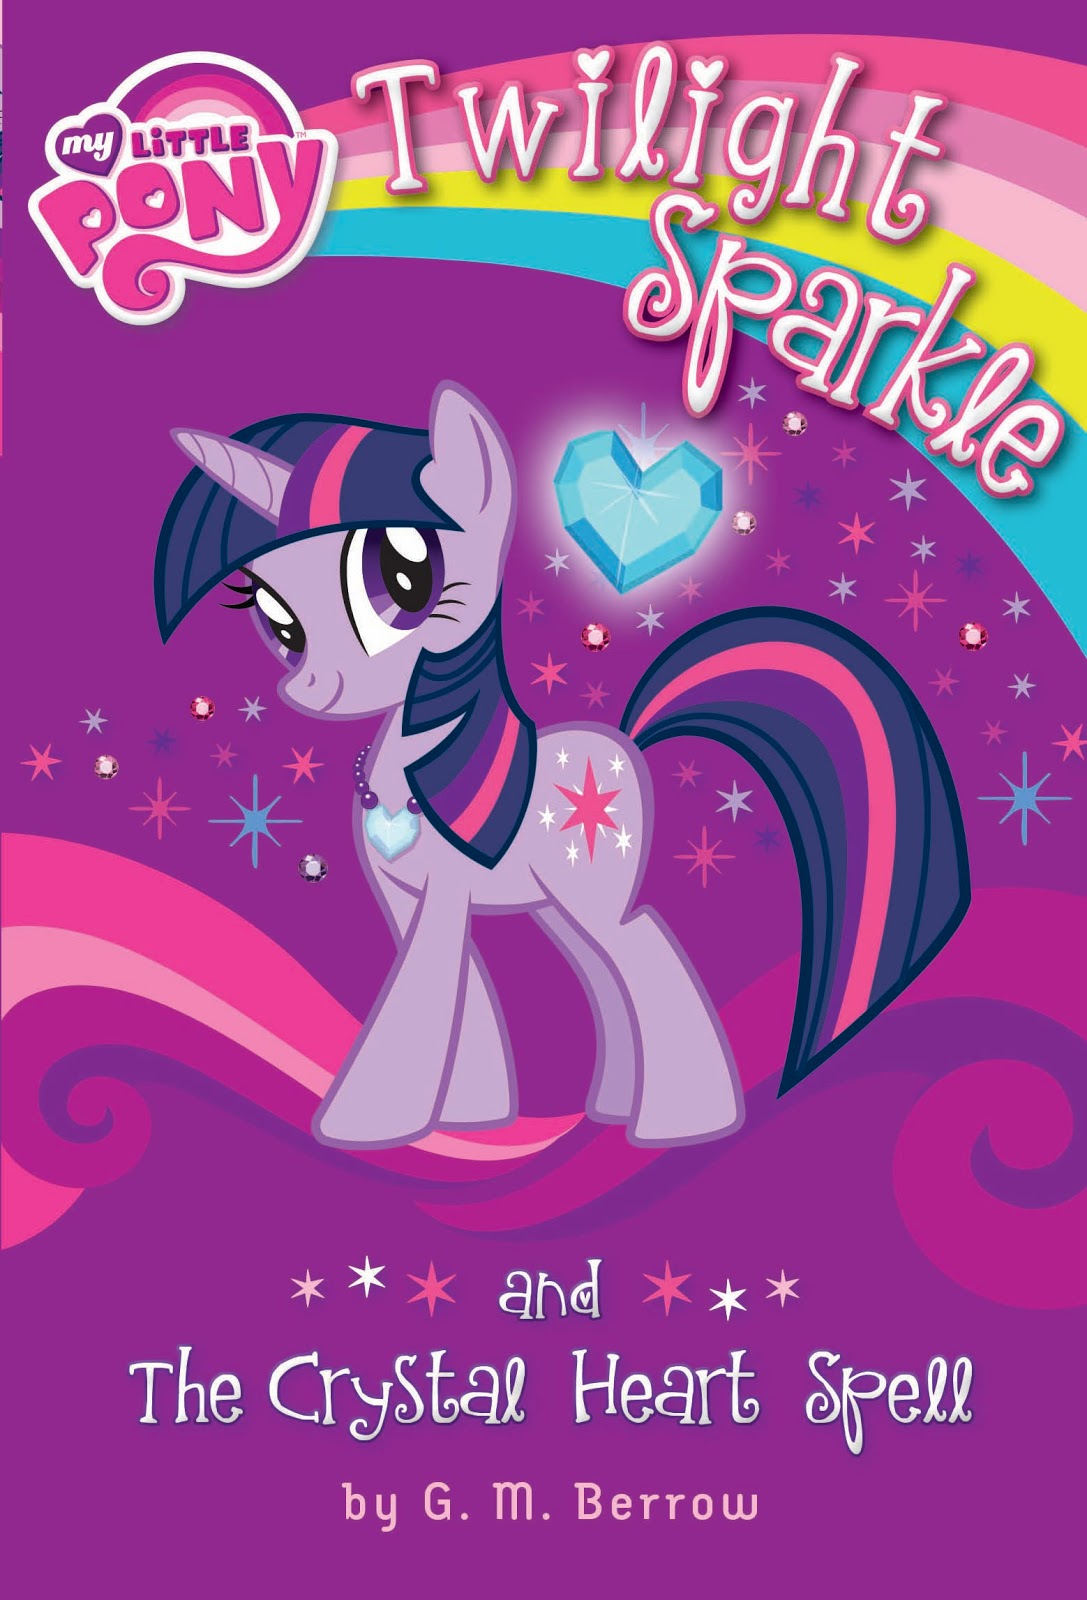 Книга pony. Твайлайт с книгой. My little Pony Twilight Sparkle в книге. Книжка пони. Книжка my little Pony.